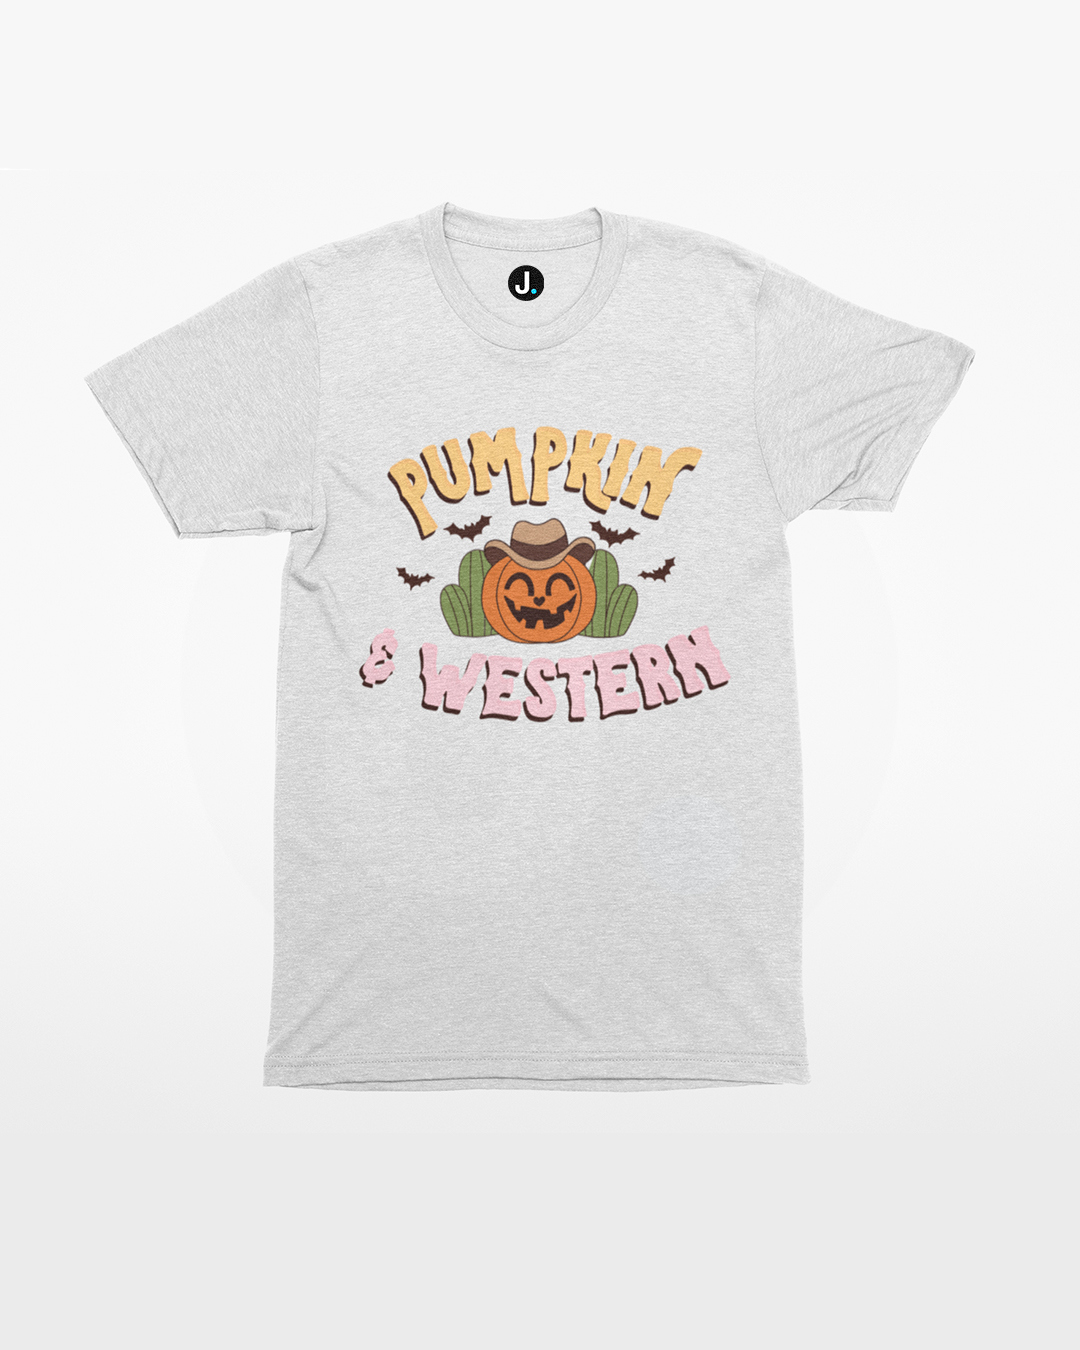 Pumpkin and Western T-Shirt - Halloween Country and Western T-Shirt - Pumpkin and Western Halloween T-Shirt